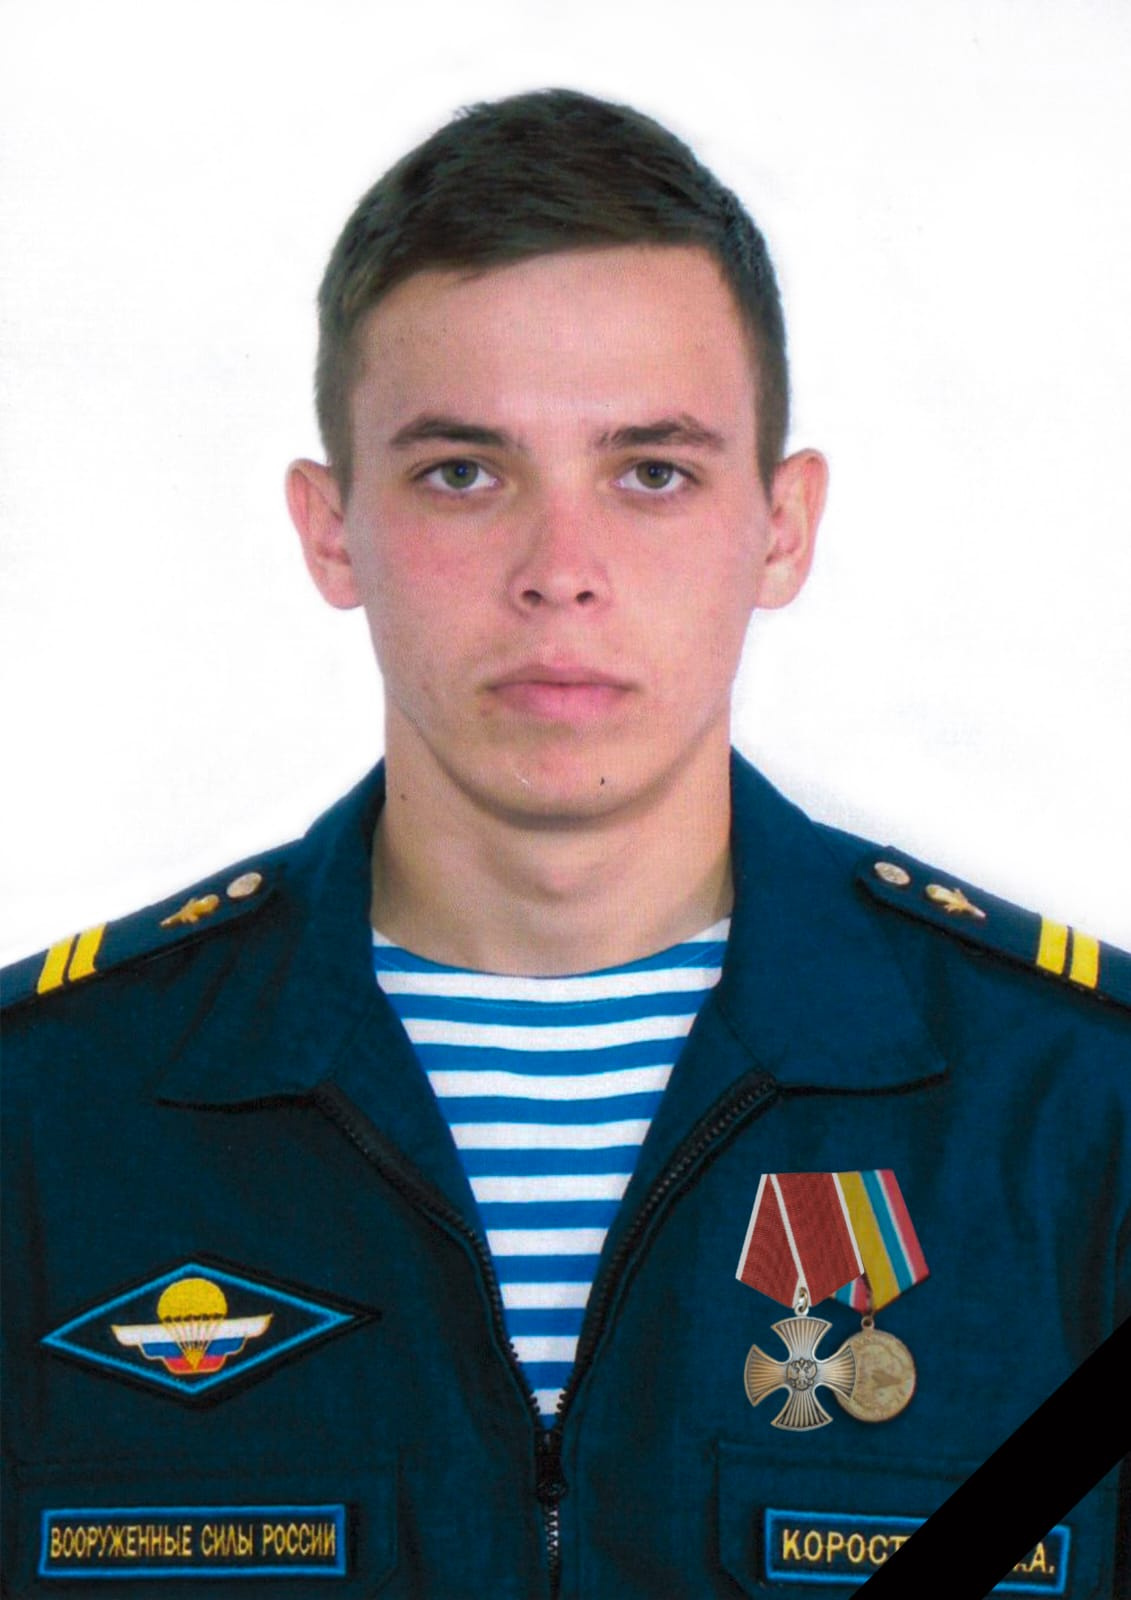 Иван Коростелев тоже был воспитанником школы-интерната. Он погиб в боях на Украине 25 февраля